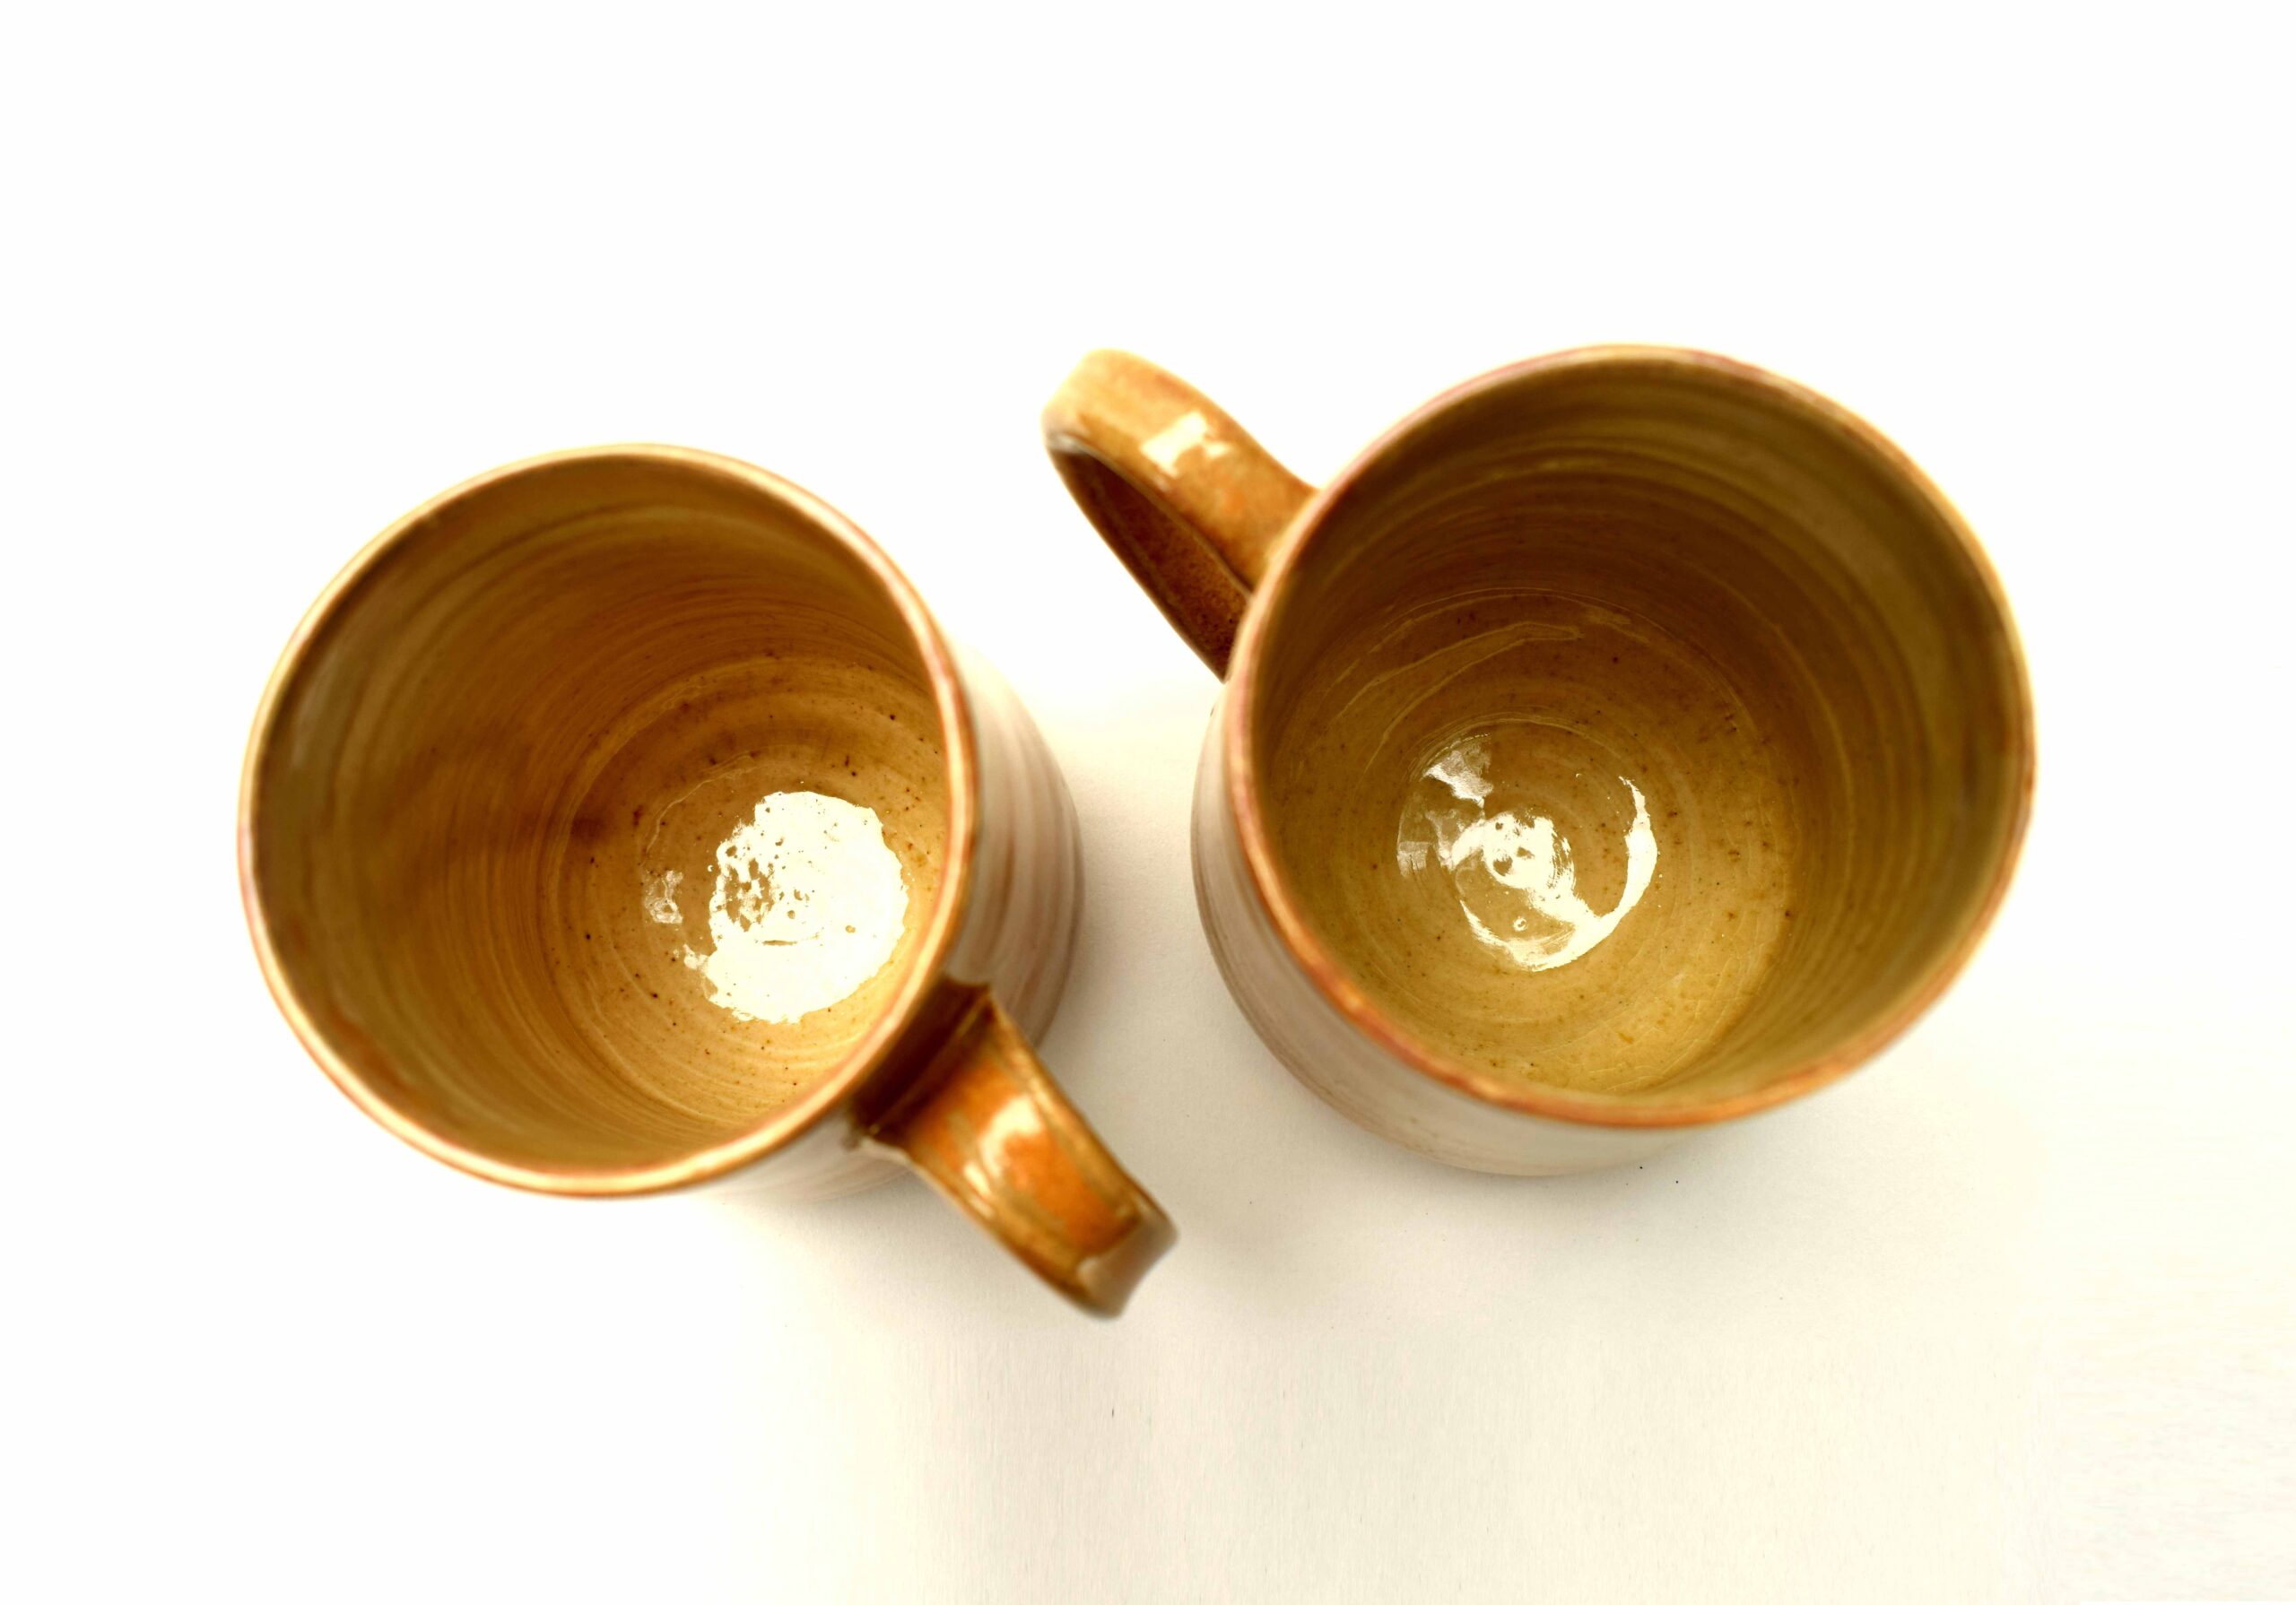 Claybotik Ceramic Coffee Mug